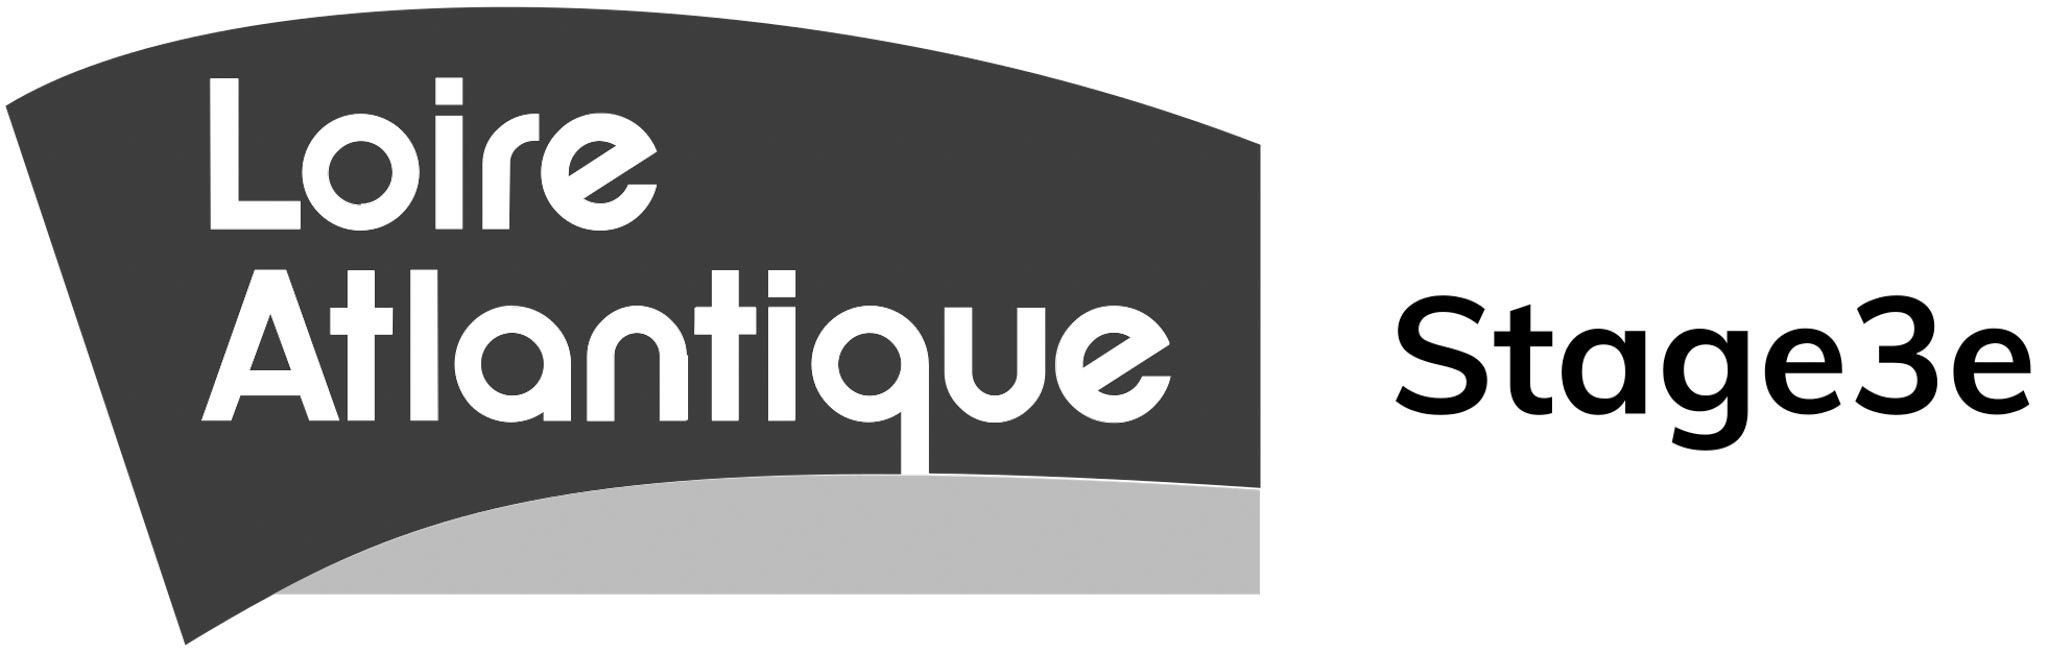 Logode loire atlantique stage 3e - Nantes métropole entreprises